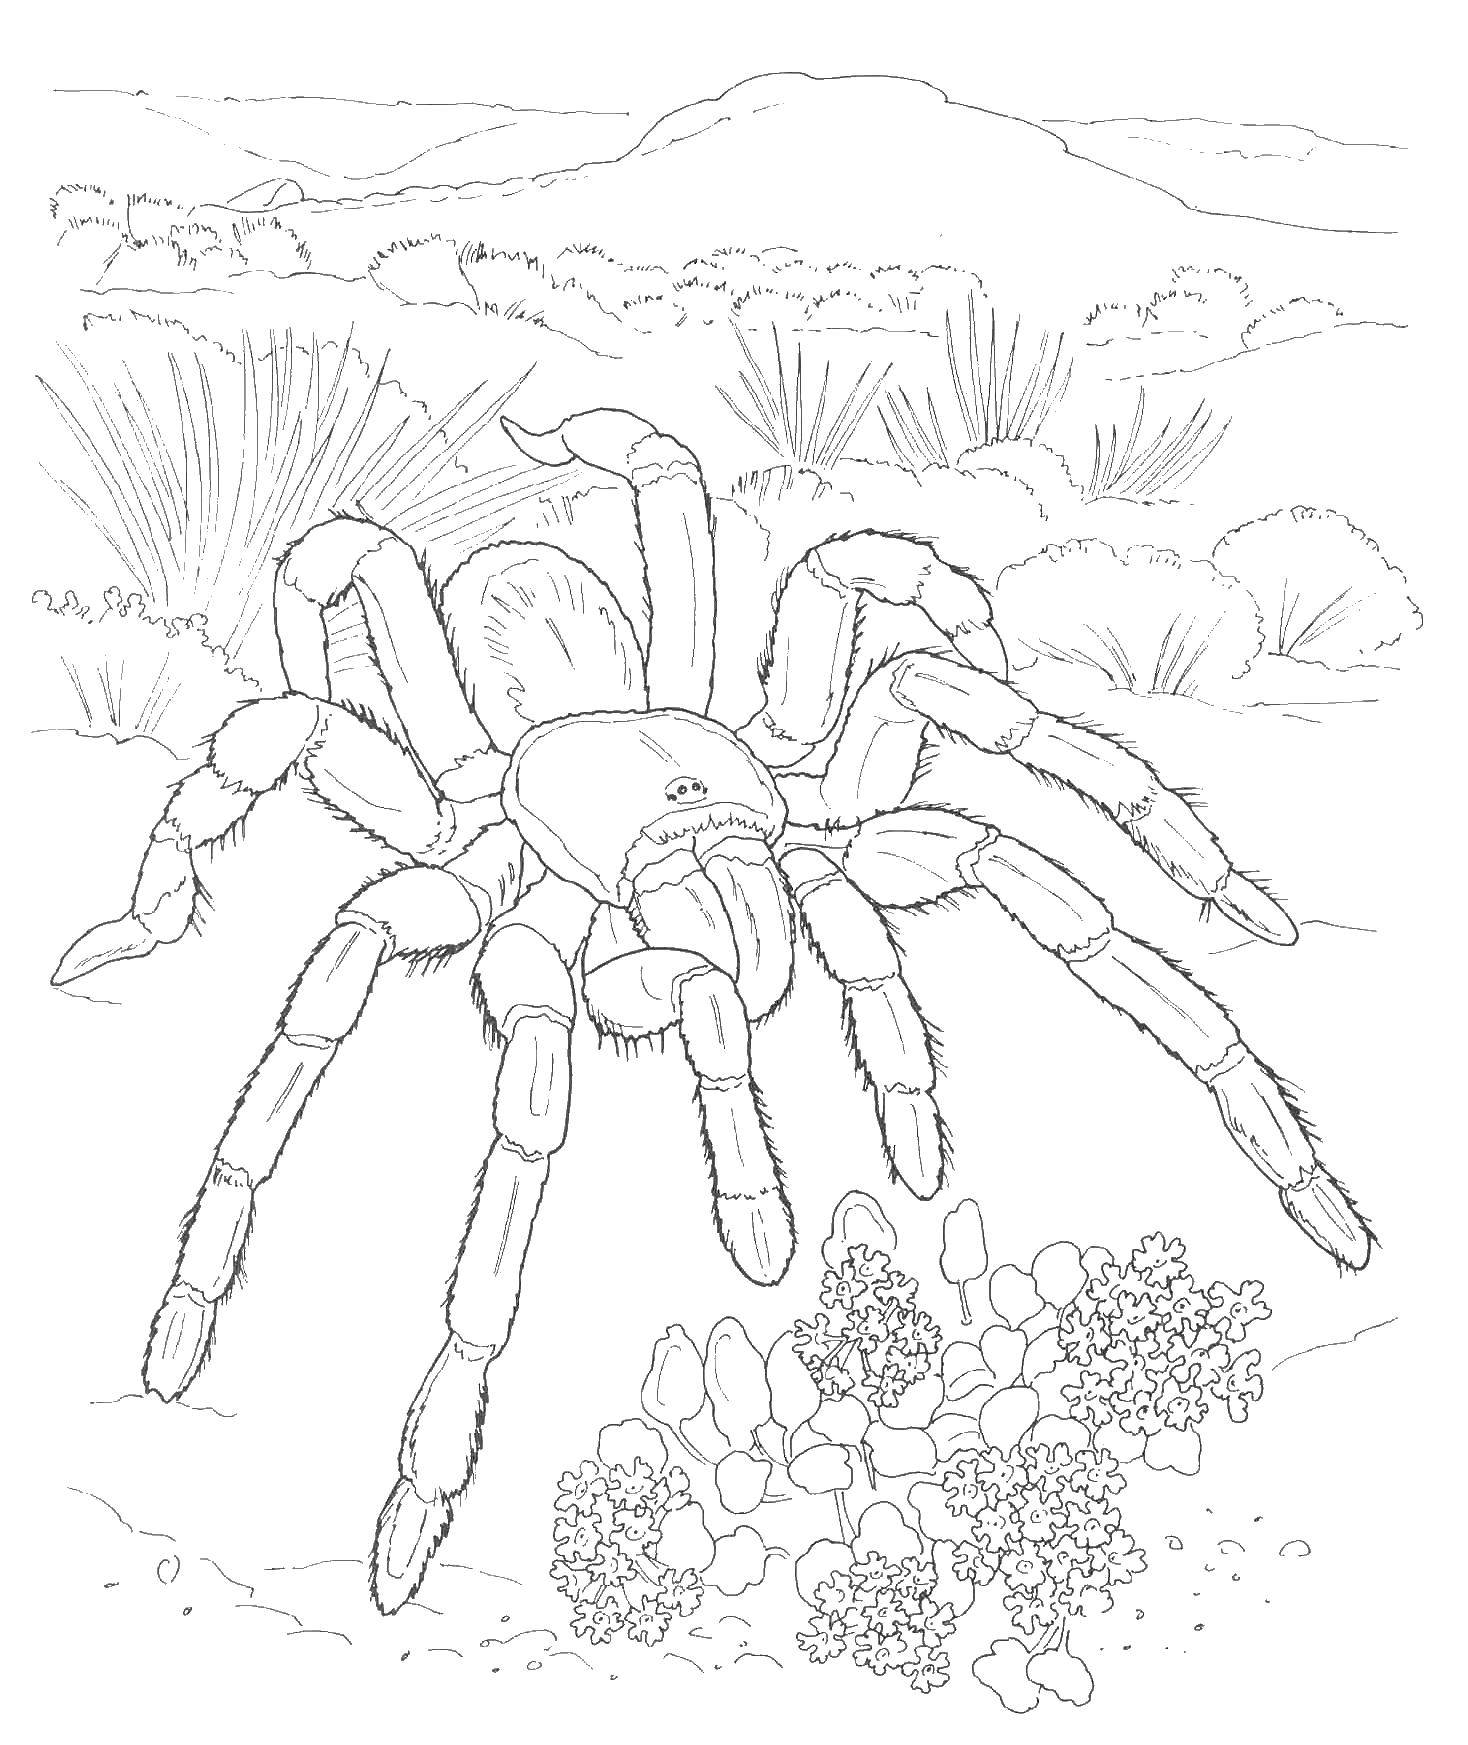  Тарантул в пустыне Качественная раскраска для школьников. Большой паук с ворсинками рядом с цветами.